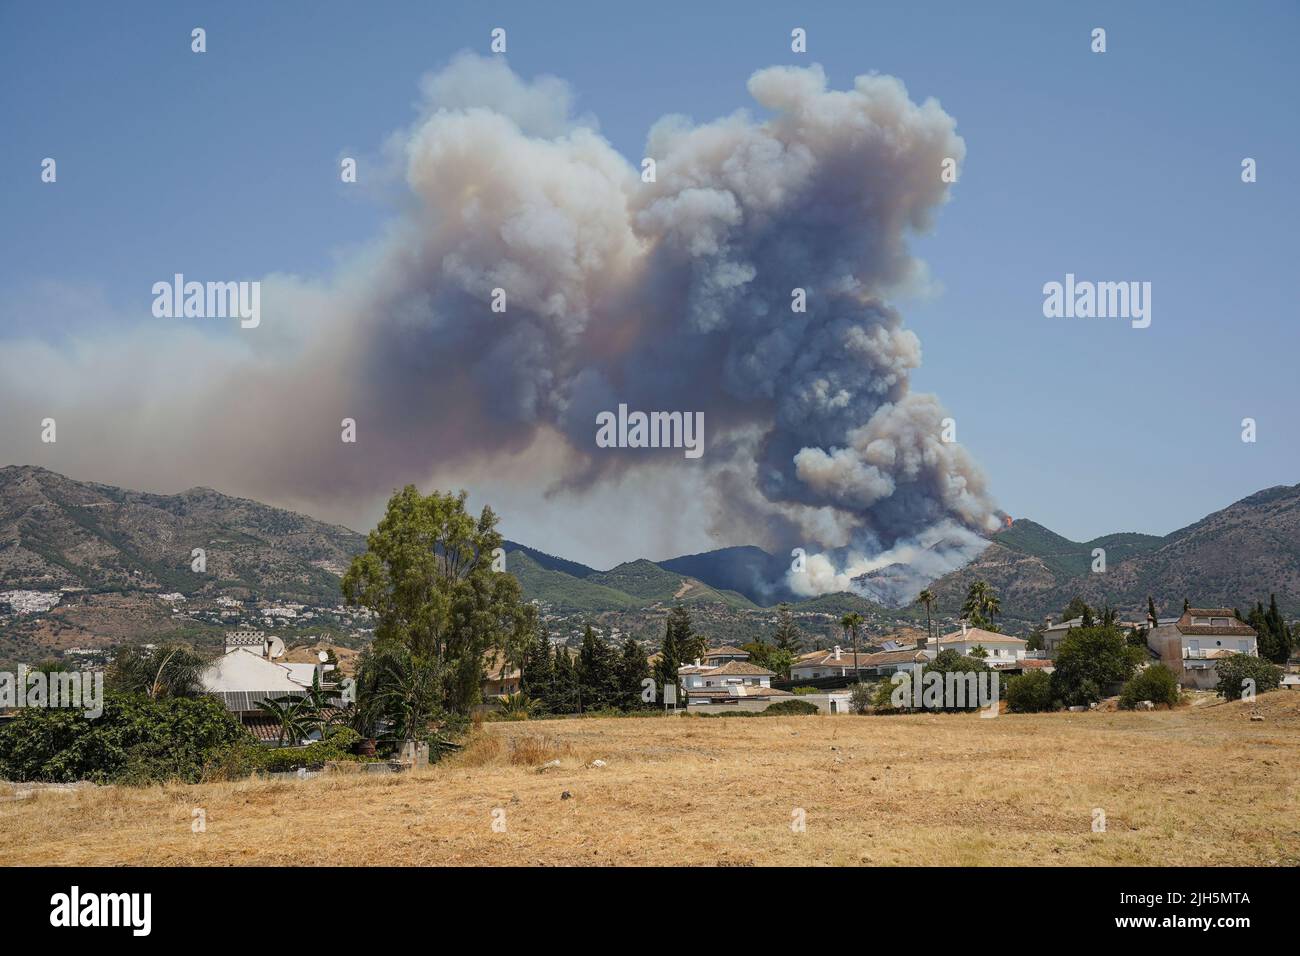 Waldbrand in der Sierra de Mijas kann man beim Waldbrand riesige Rauchsäulen sehen. 18. juli 2022, Mijas, Andalusien, Spanien. Stockfoto